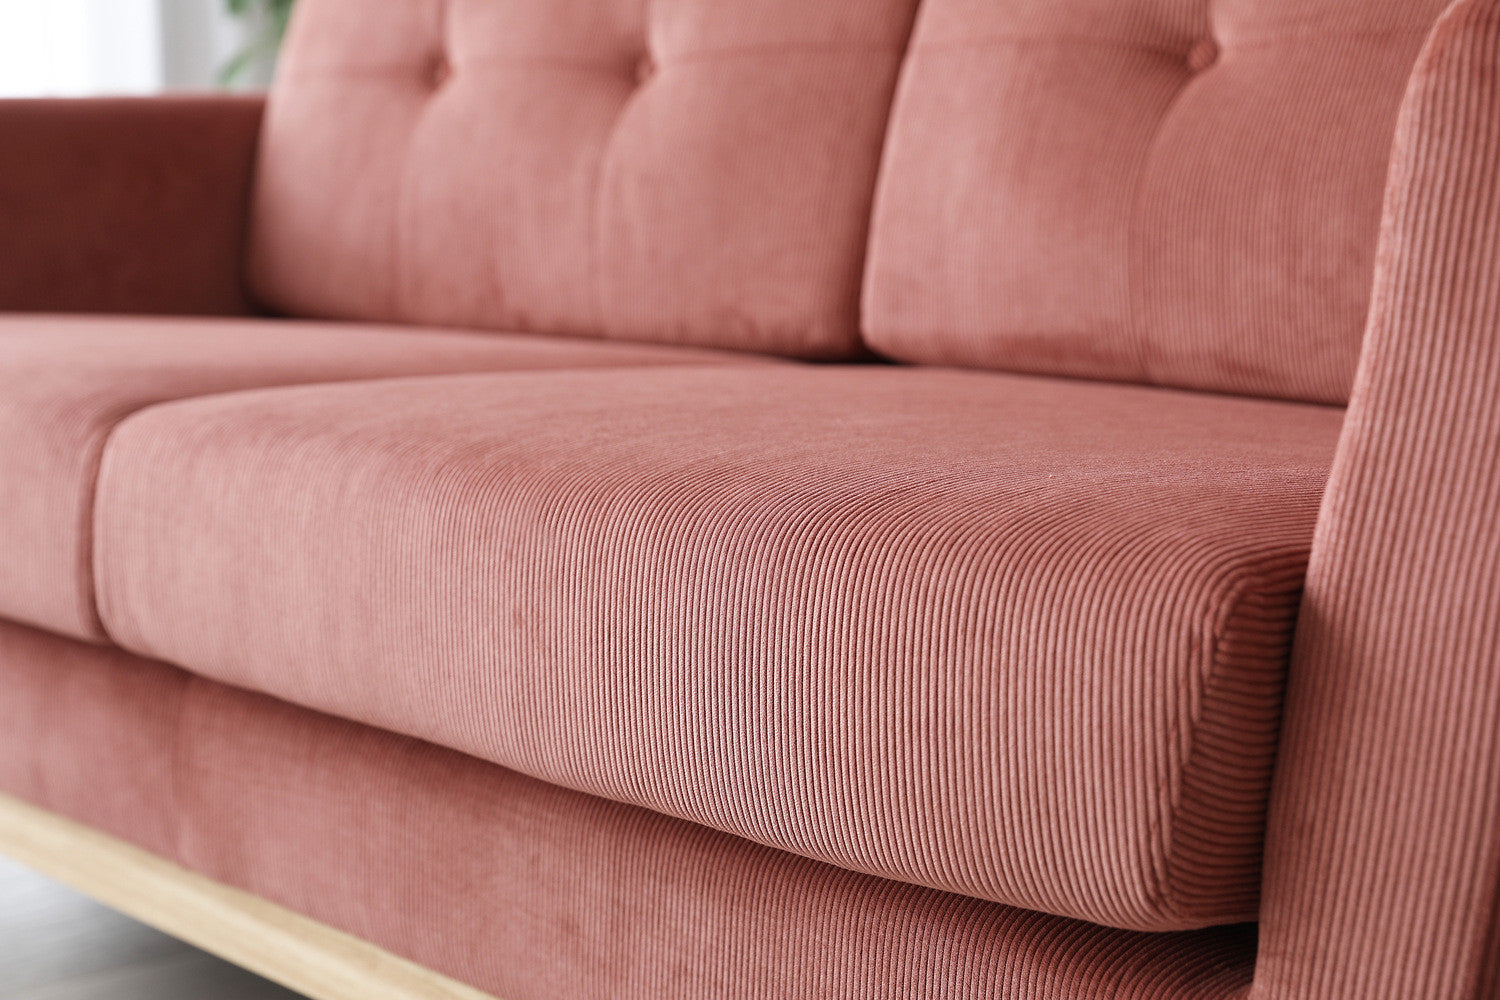 Quelle densité pour un canapé ? – Concept Usine